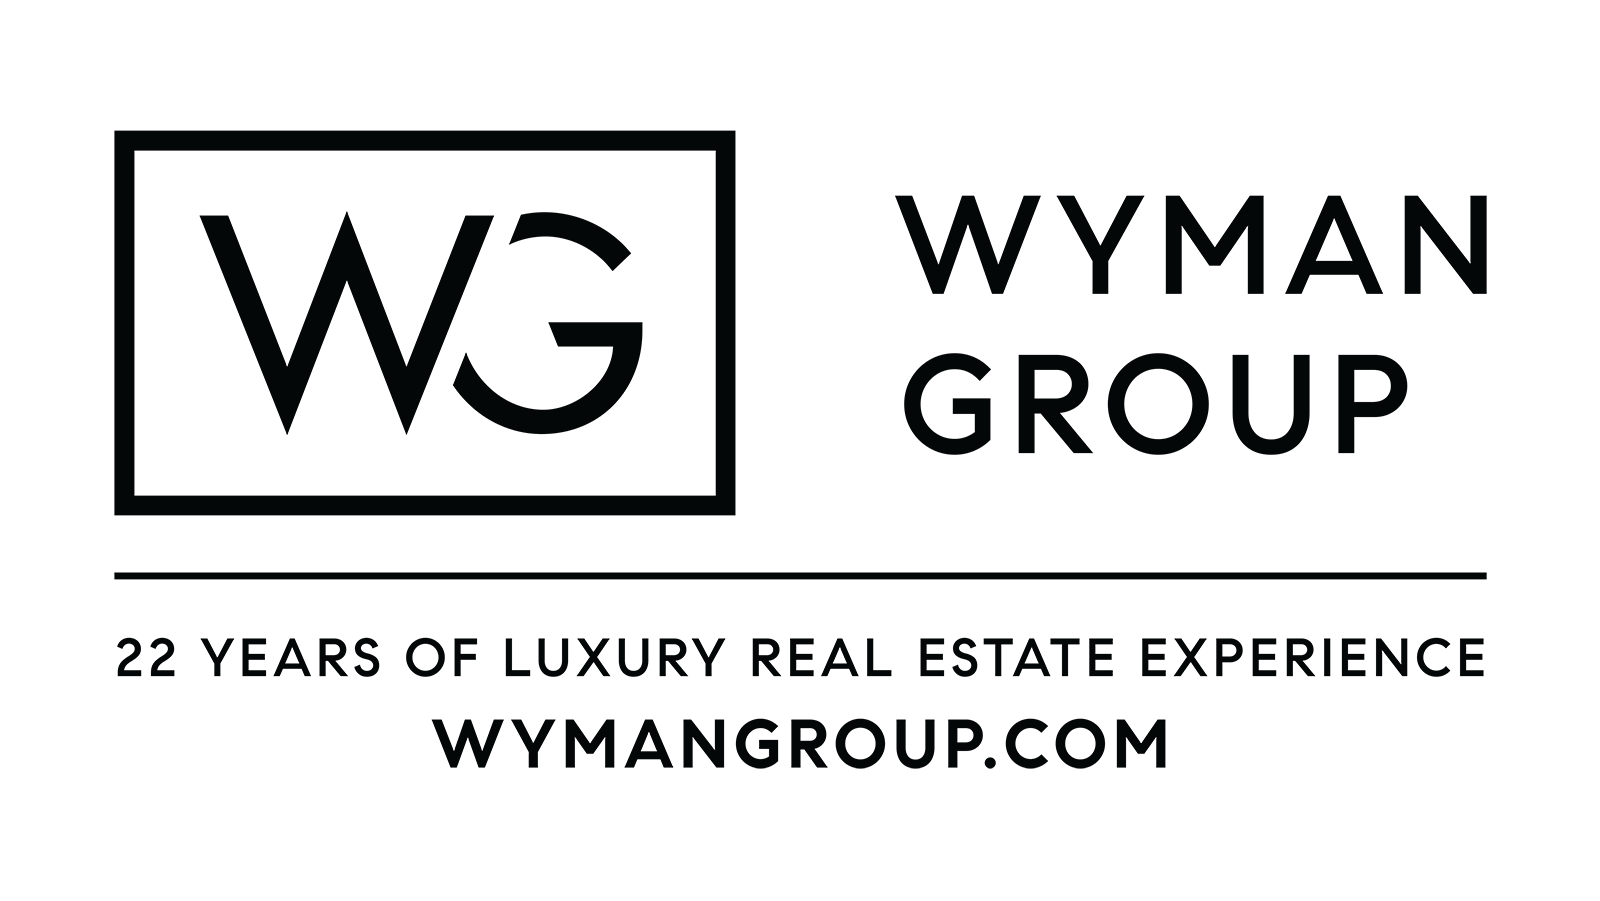 Wyman Group